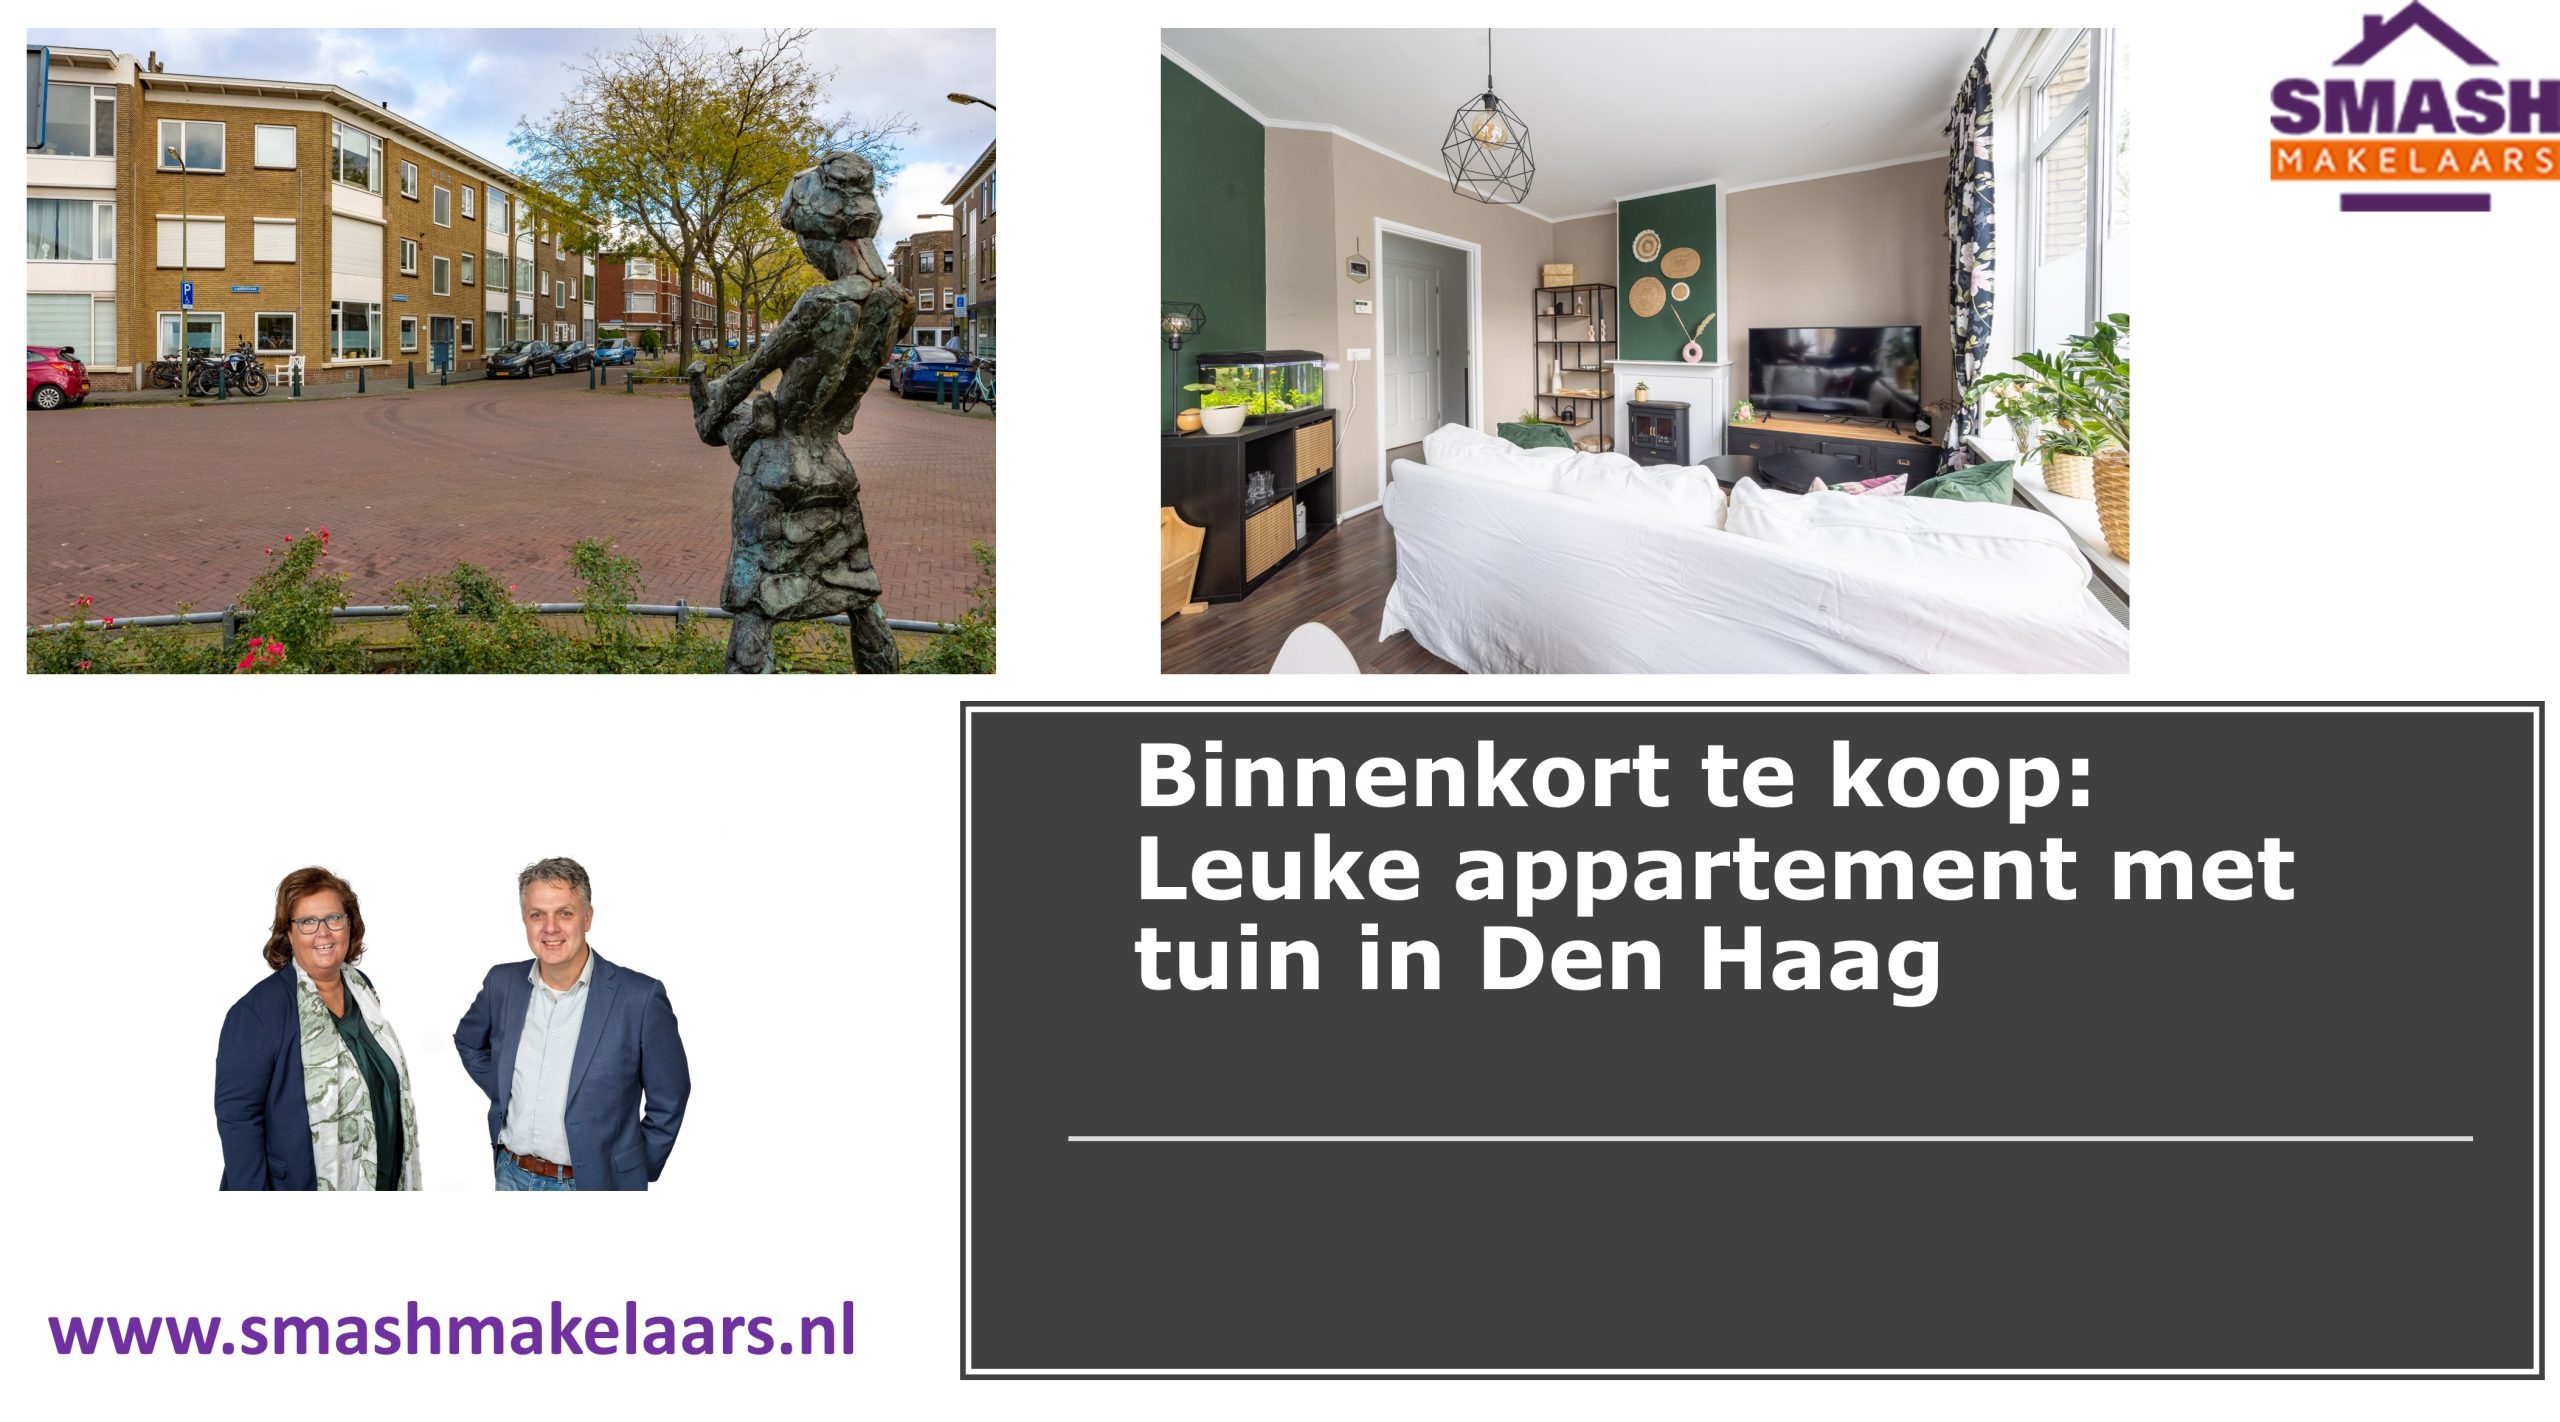 Appartement met tuin te koop in Den Haag. Zoekt u een makelaar in de Den Haag voor het kopen of verkopen van uw huis neem contact op met SMASH makelaars de verkoopmakelaar van Den Haag